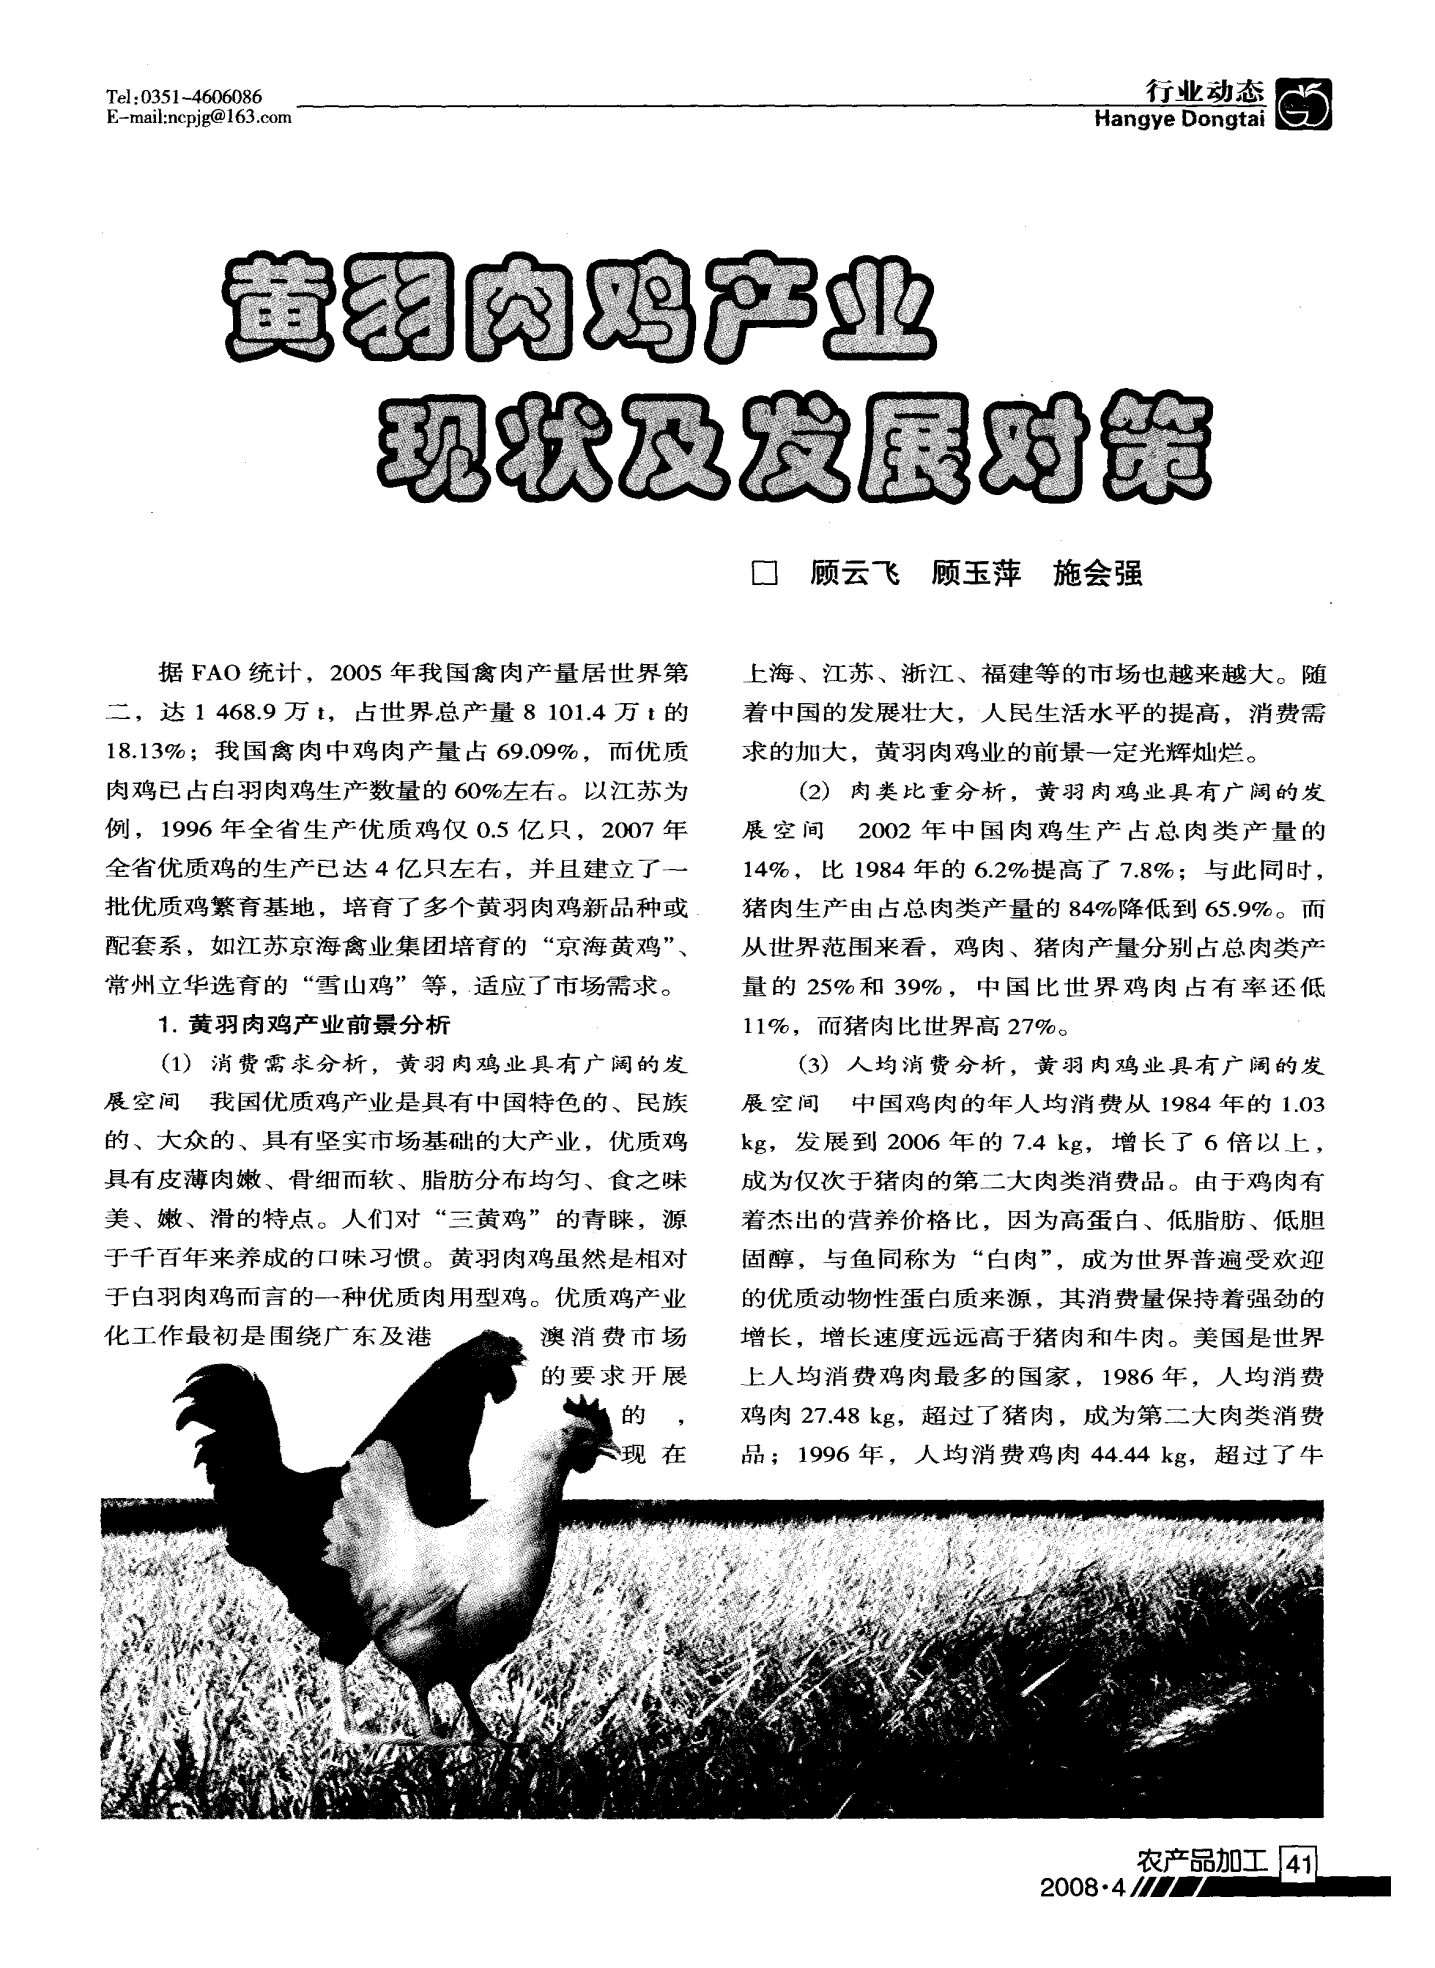 黄羽肉鸡产业现状及发展对策